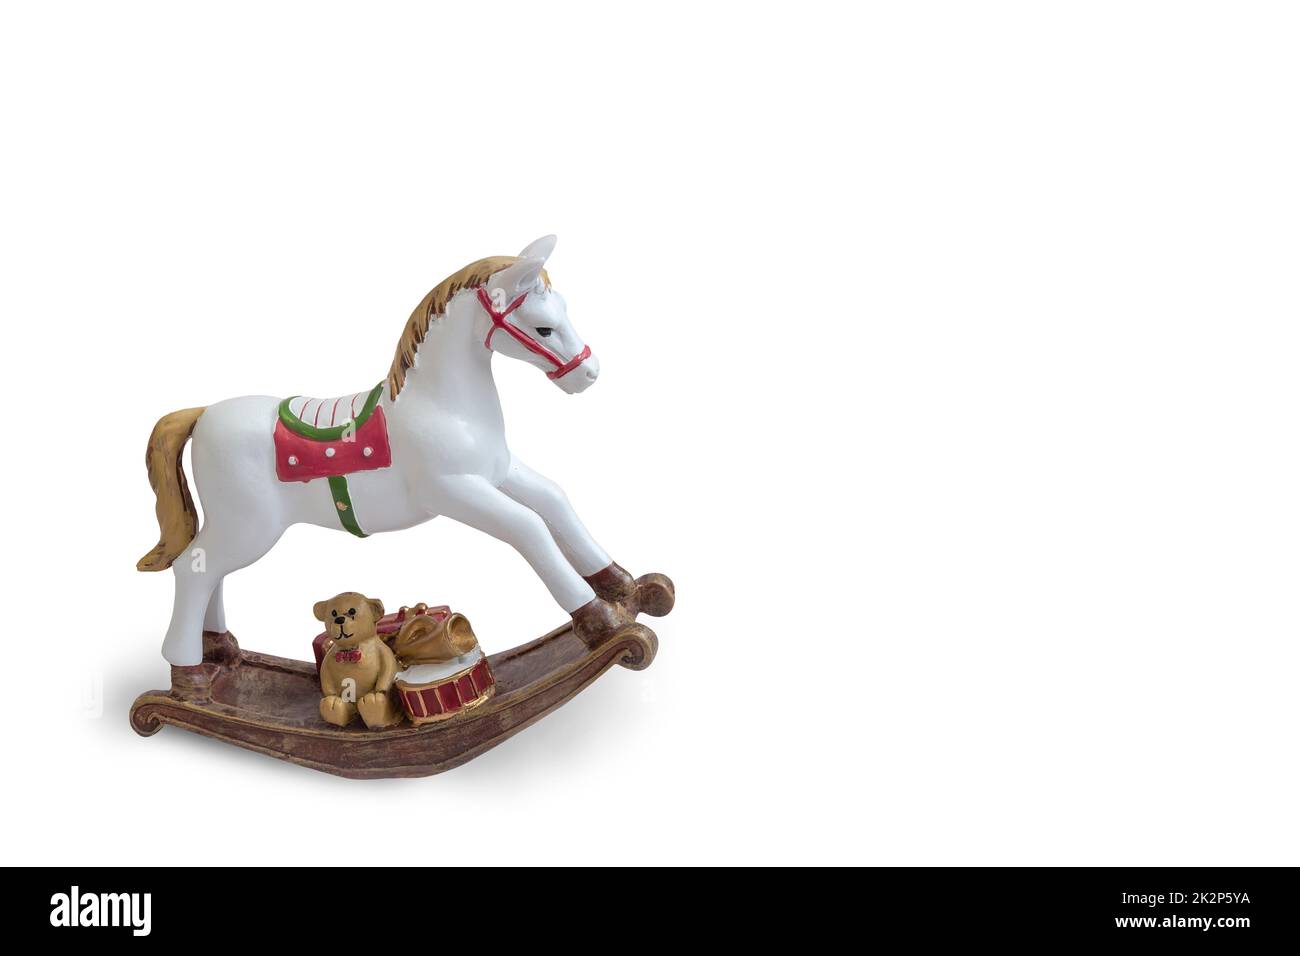 Jouet pour enfants : un cheval blanc sur une chaise à bascule Banque D'Images